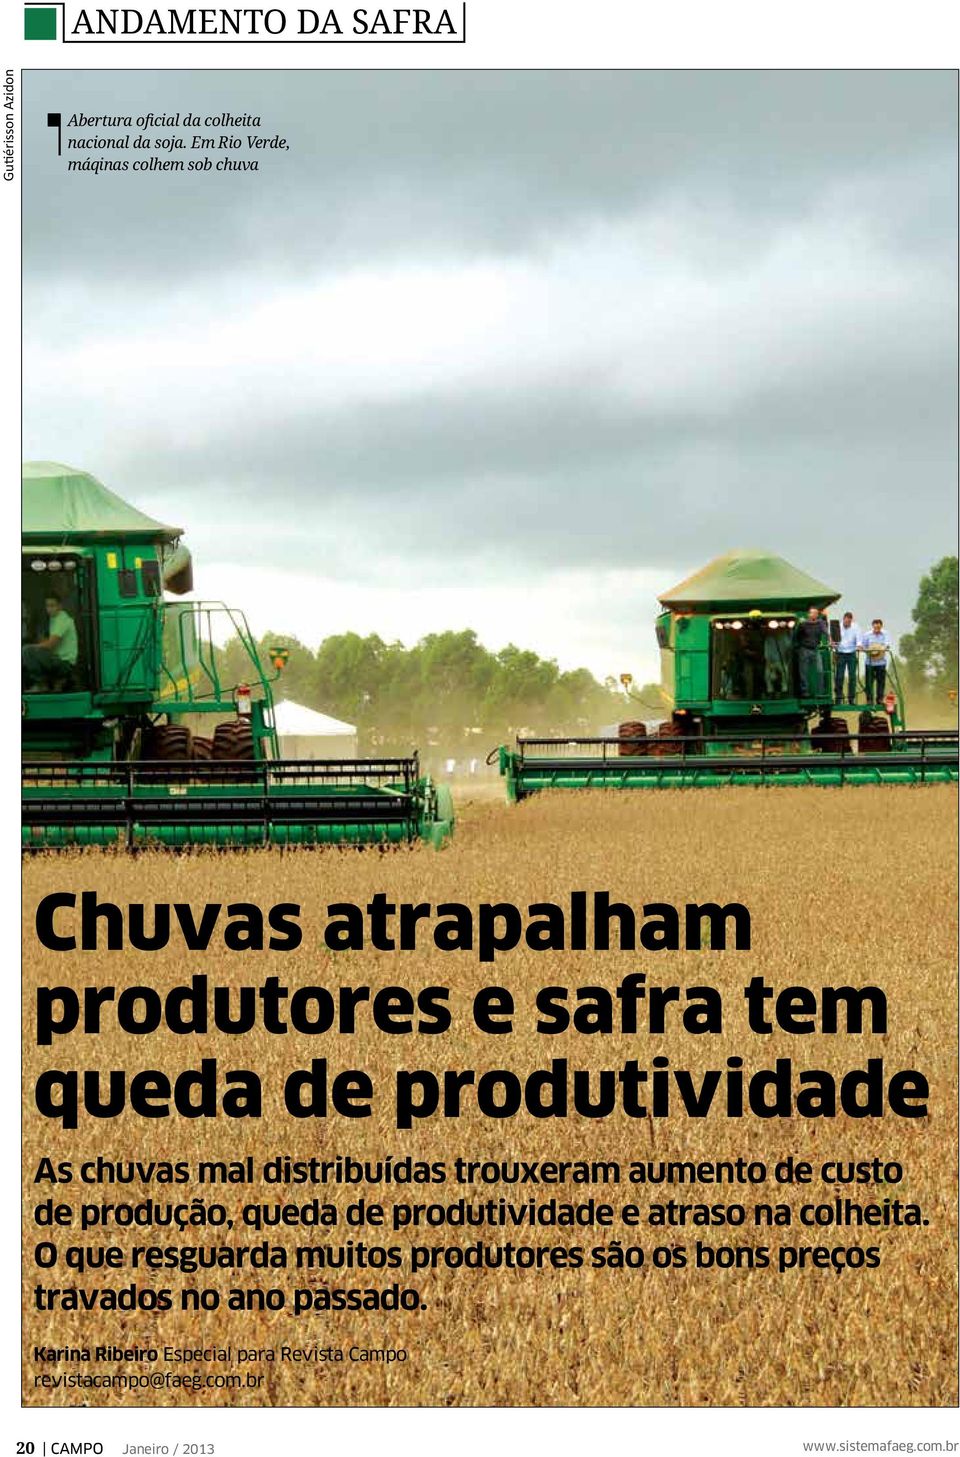 distribuídas trouxeram aumento de custo de produção, queda de produtividade e atraso na colheita.